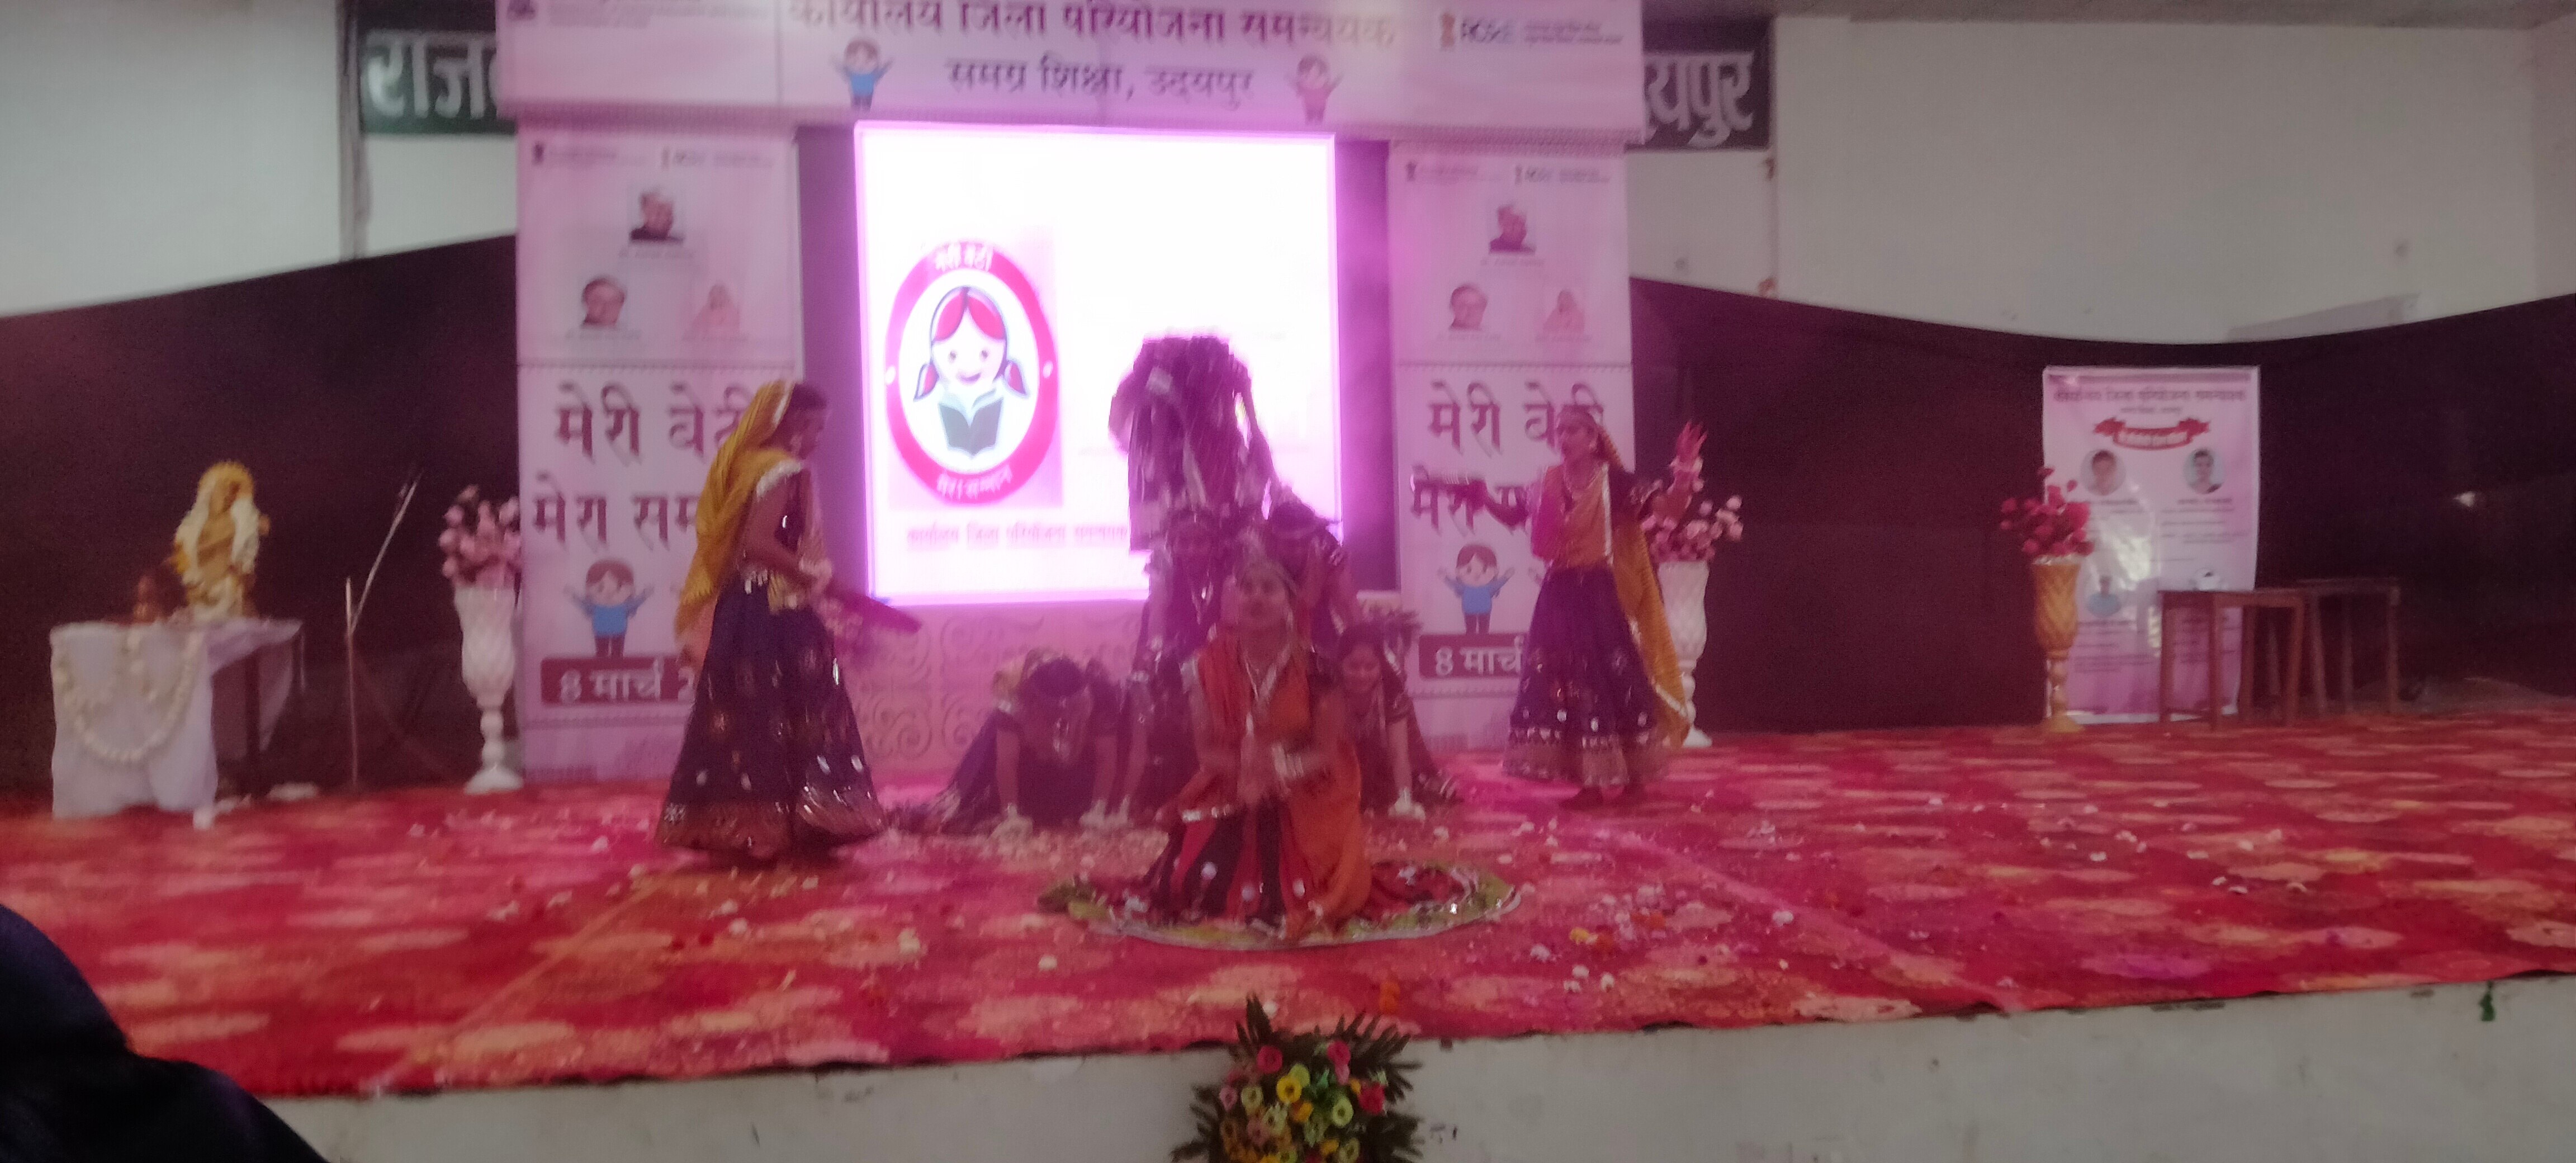 Udaipur News: किसी ने खुद का बाल विवाह रुकवाया तो कोई बनी मिस इंडिया, ऐसी 117 बच्चियों को किया गया सम्मानित